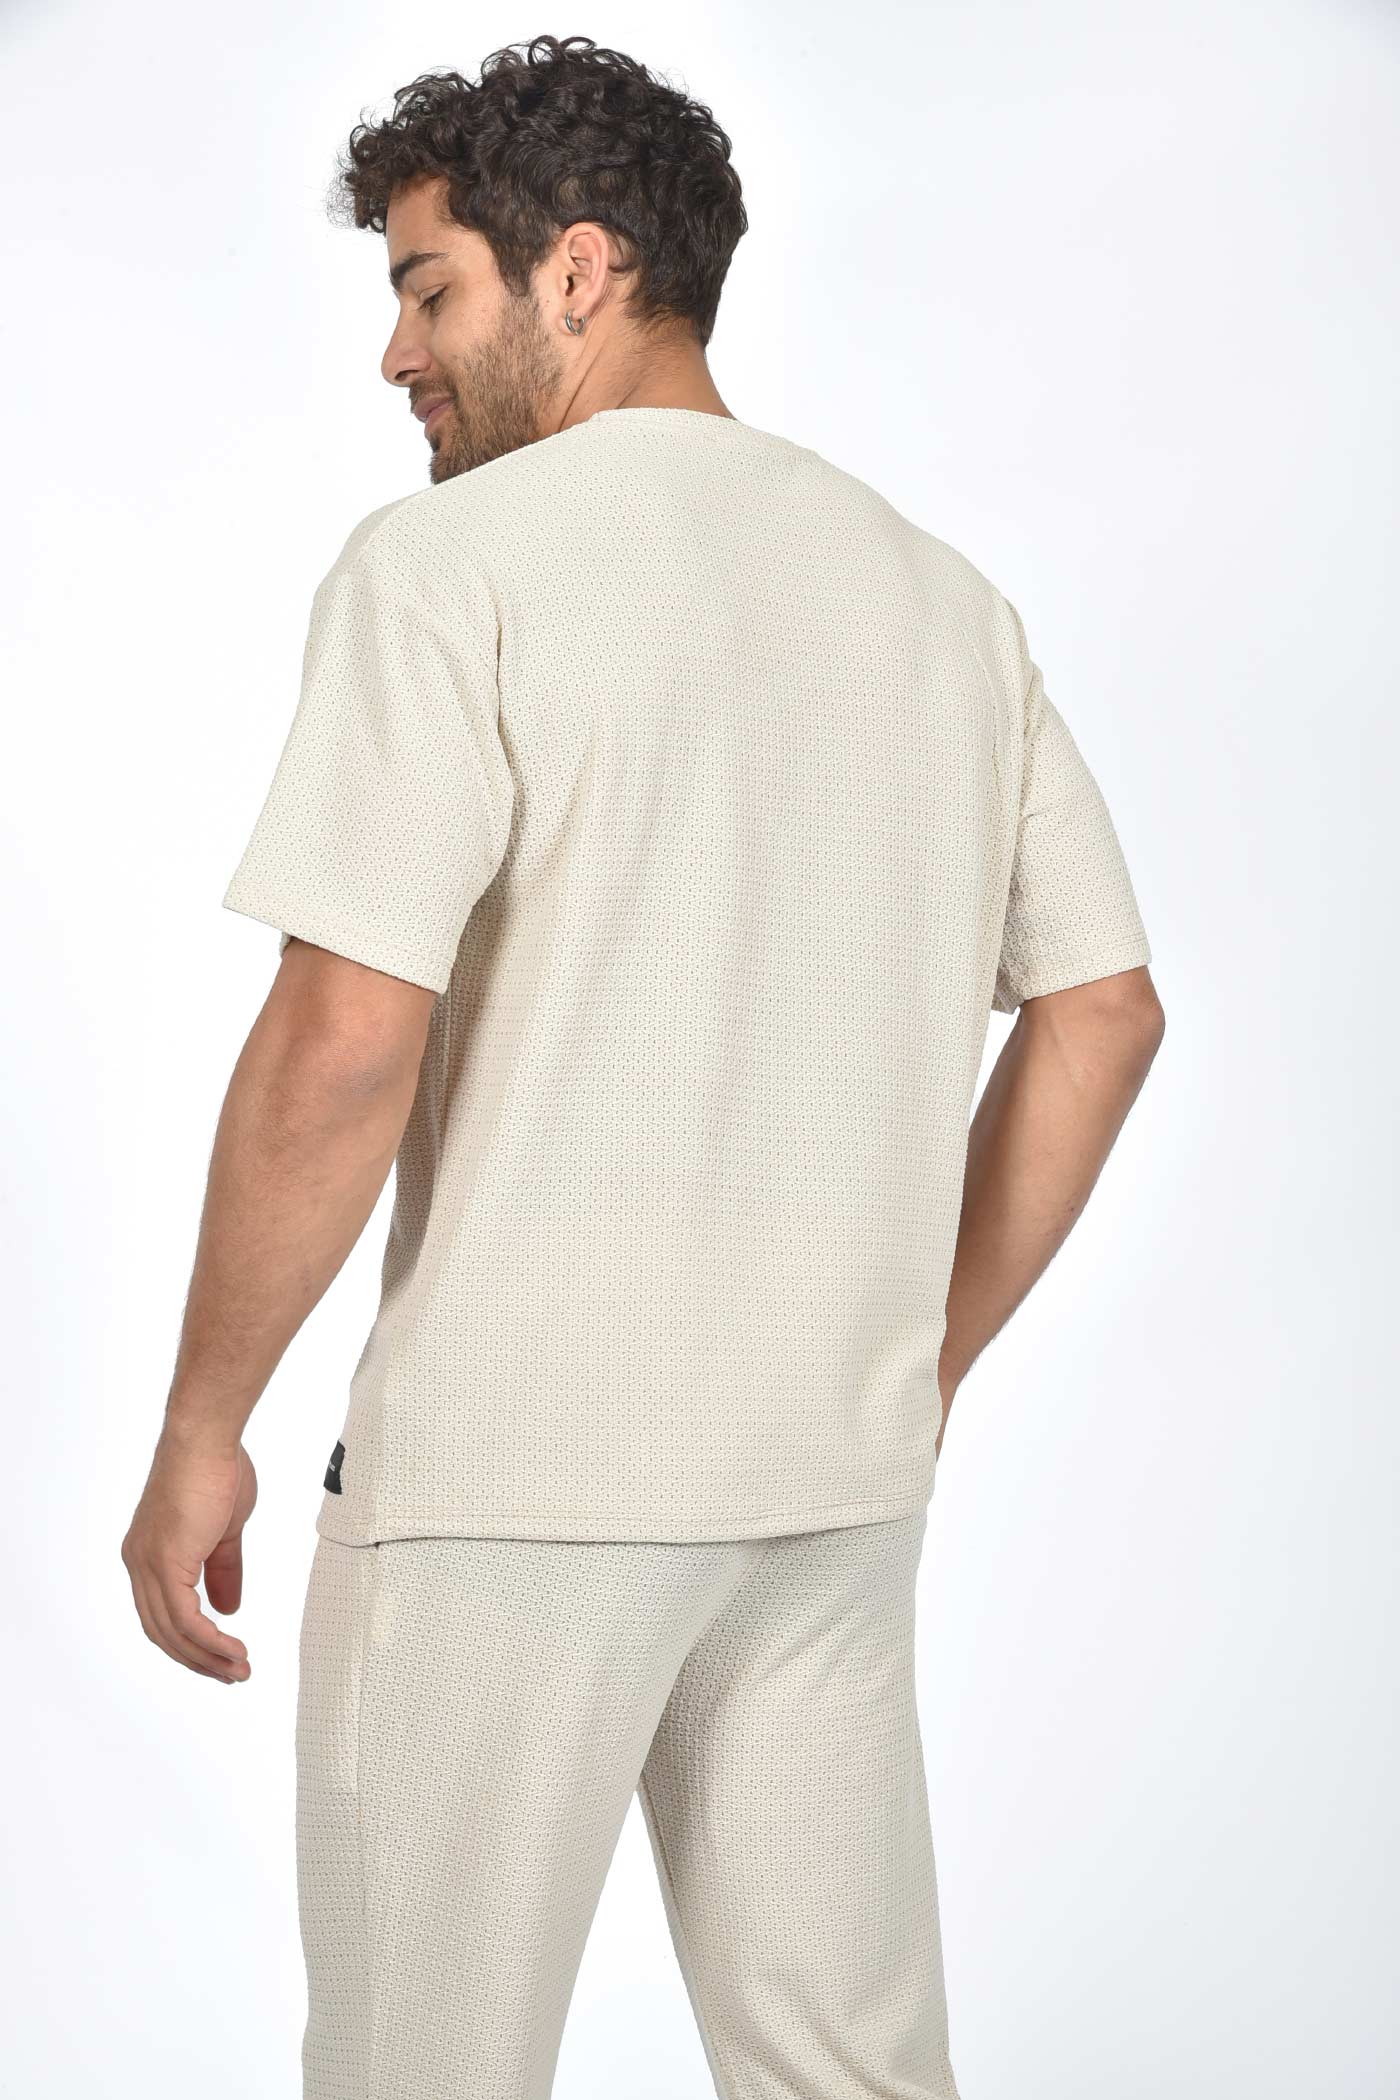 ανδρικό-oversized-t-shirt-με-πλεκτή-ύφανση